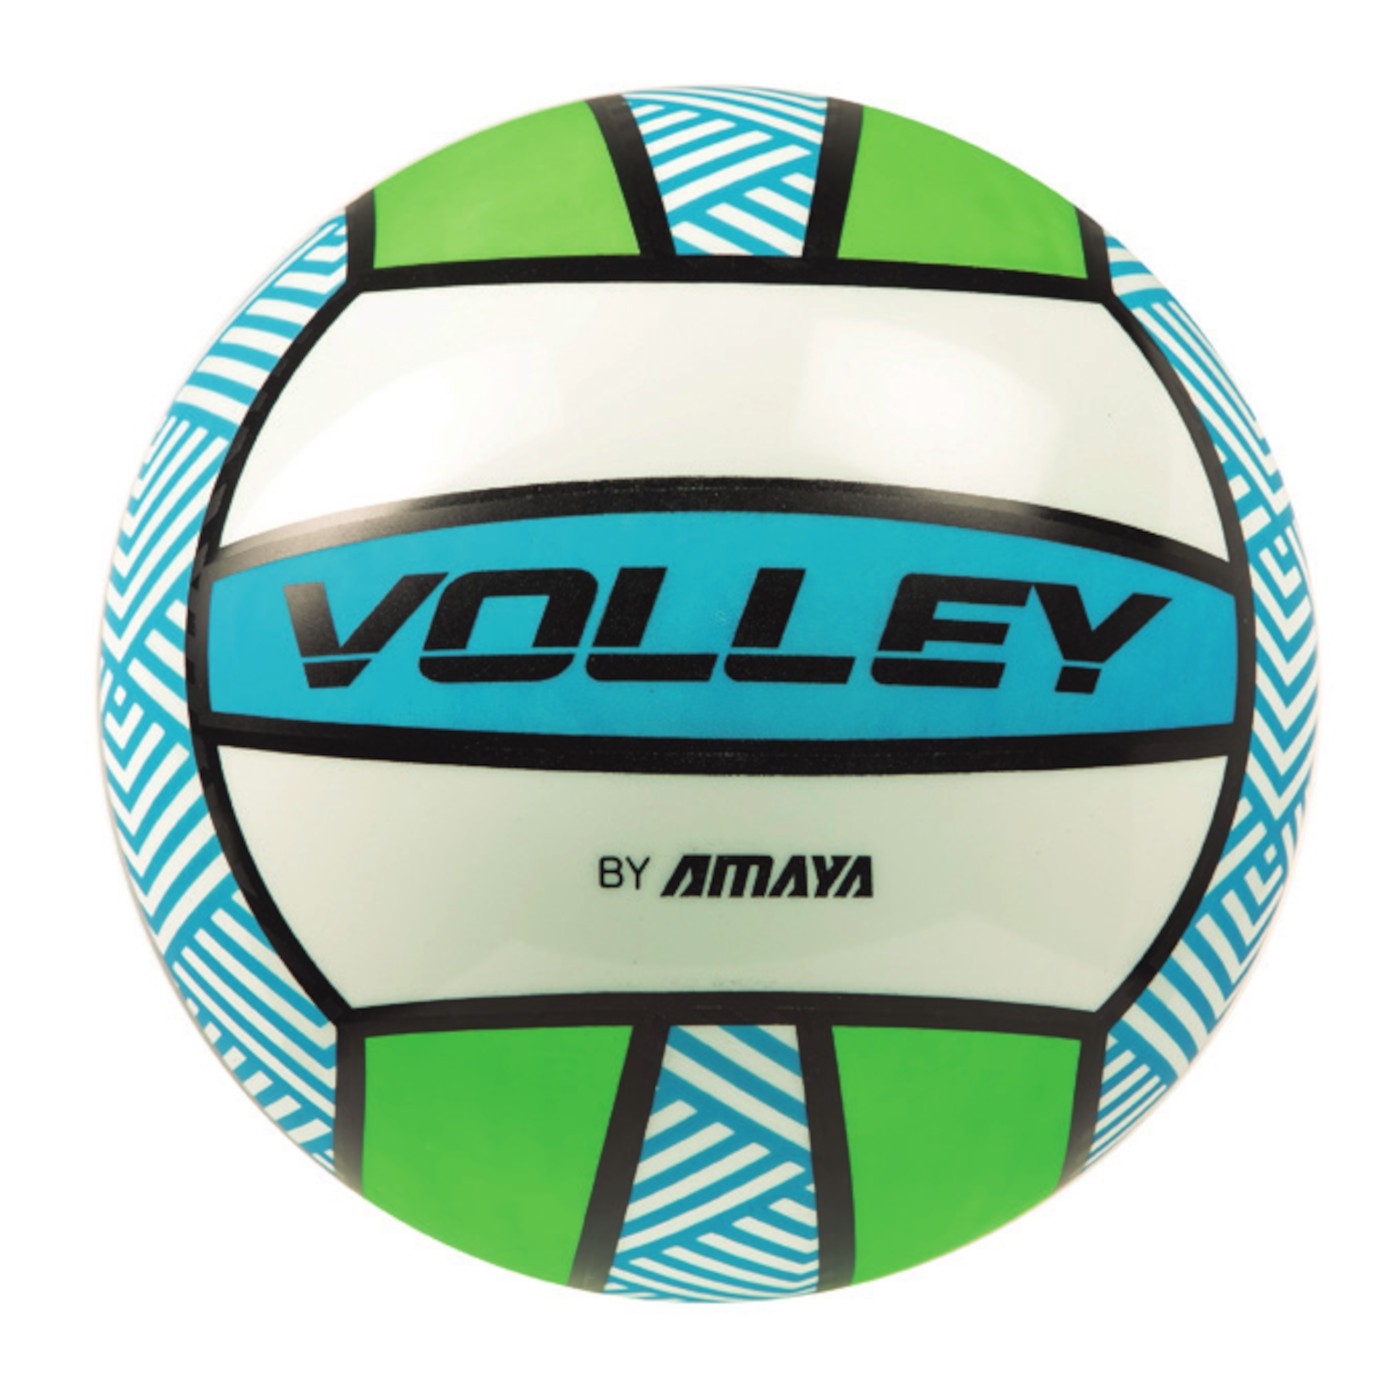 balon-de-volley-playa-decorado